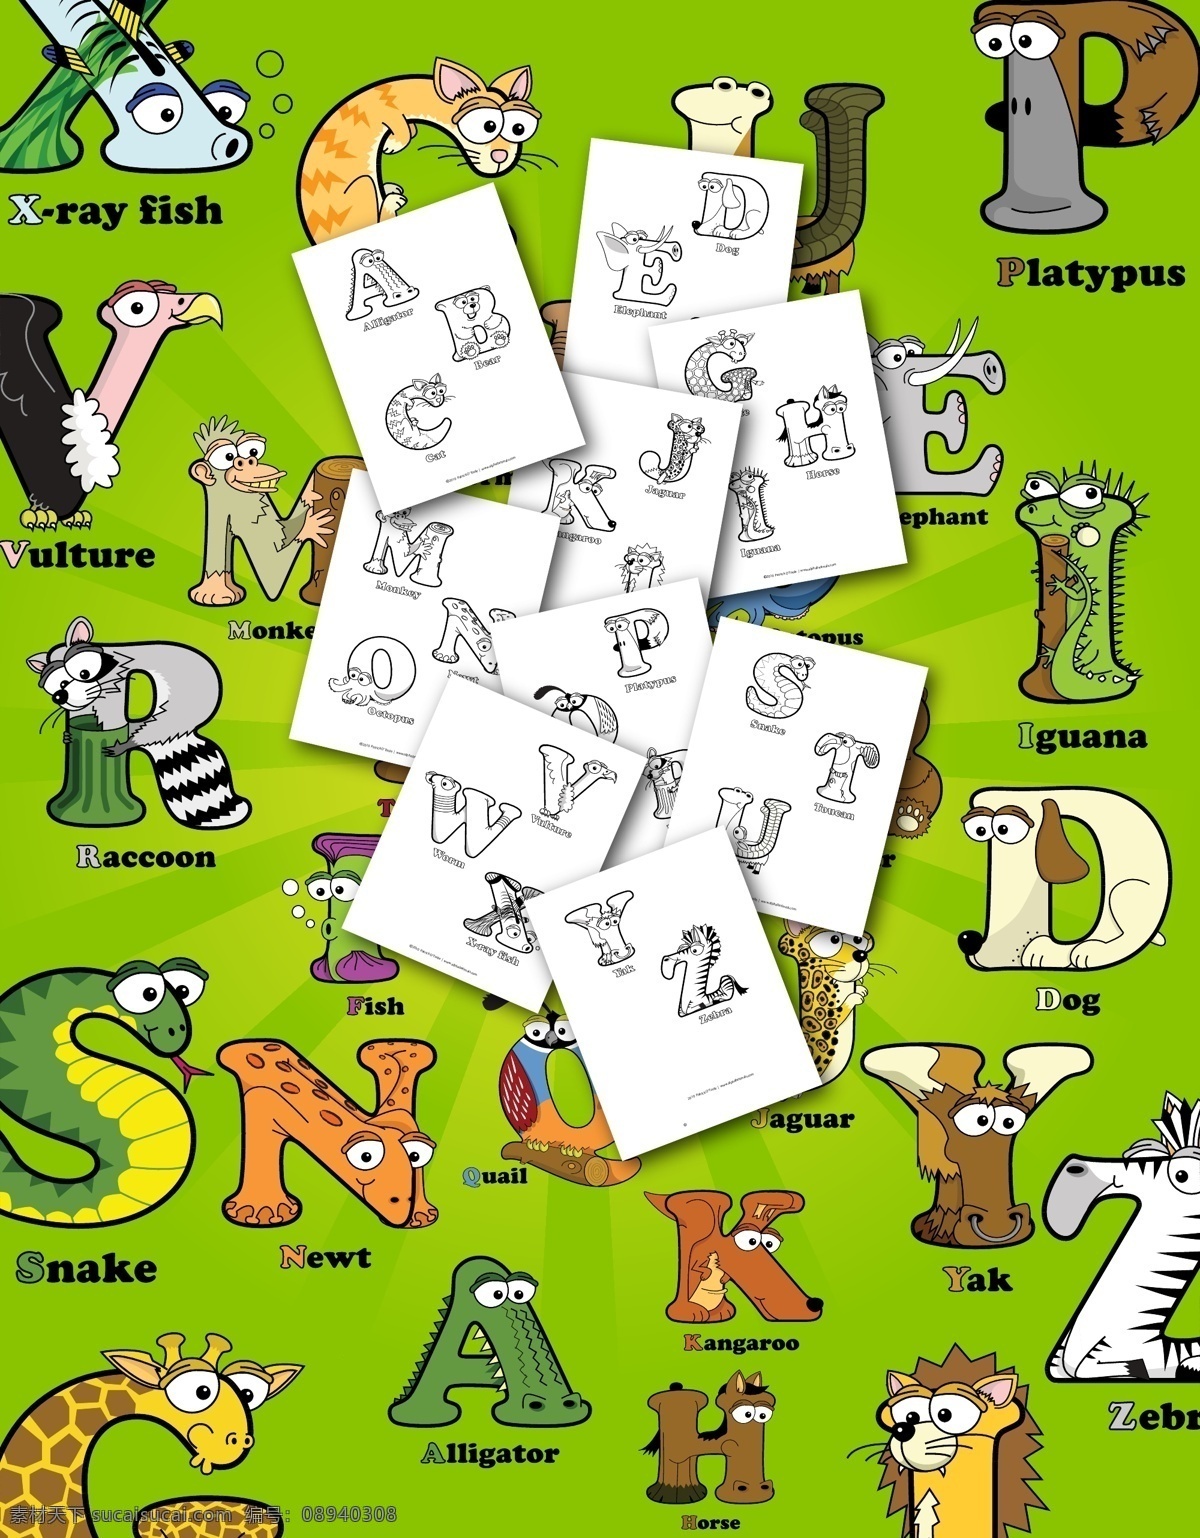 26个字母 26字母 斑马 大象 动物 鳄鱼 老虎 猫 字母 矢量 模板下载 字母设计 蛇 马 蜥蜴